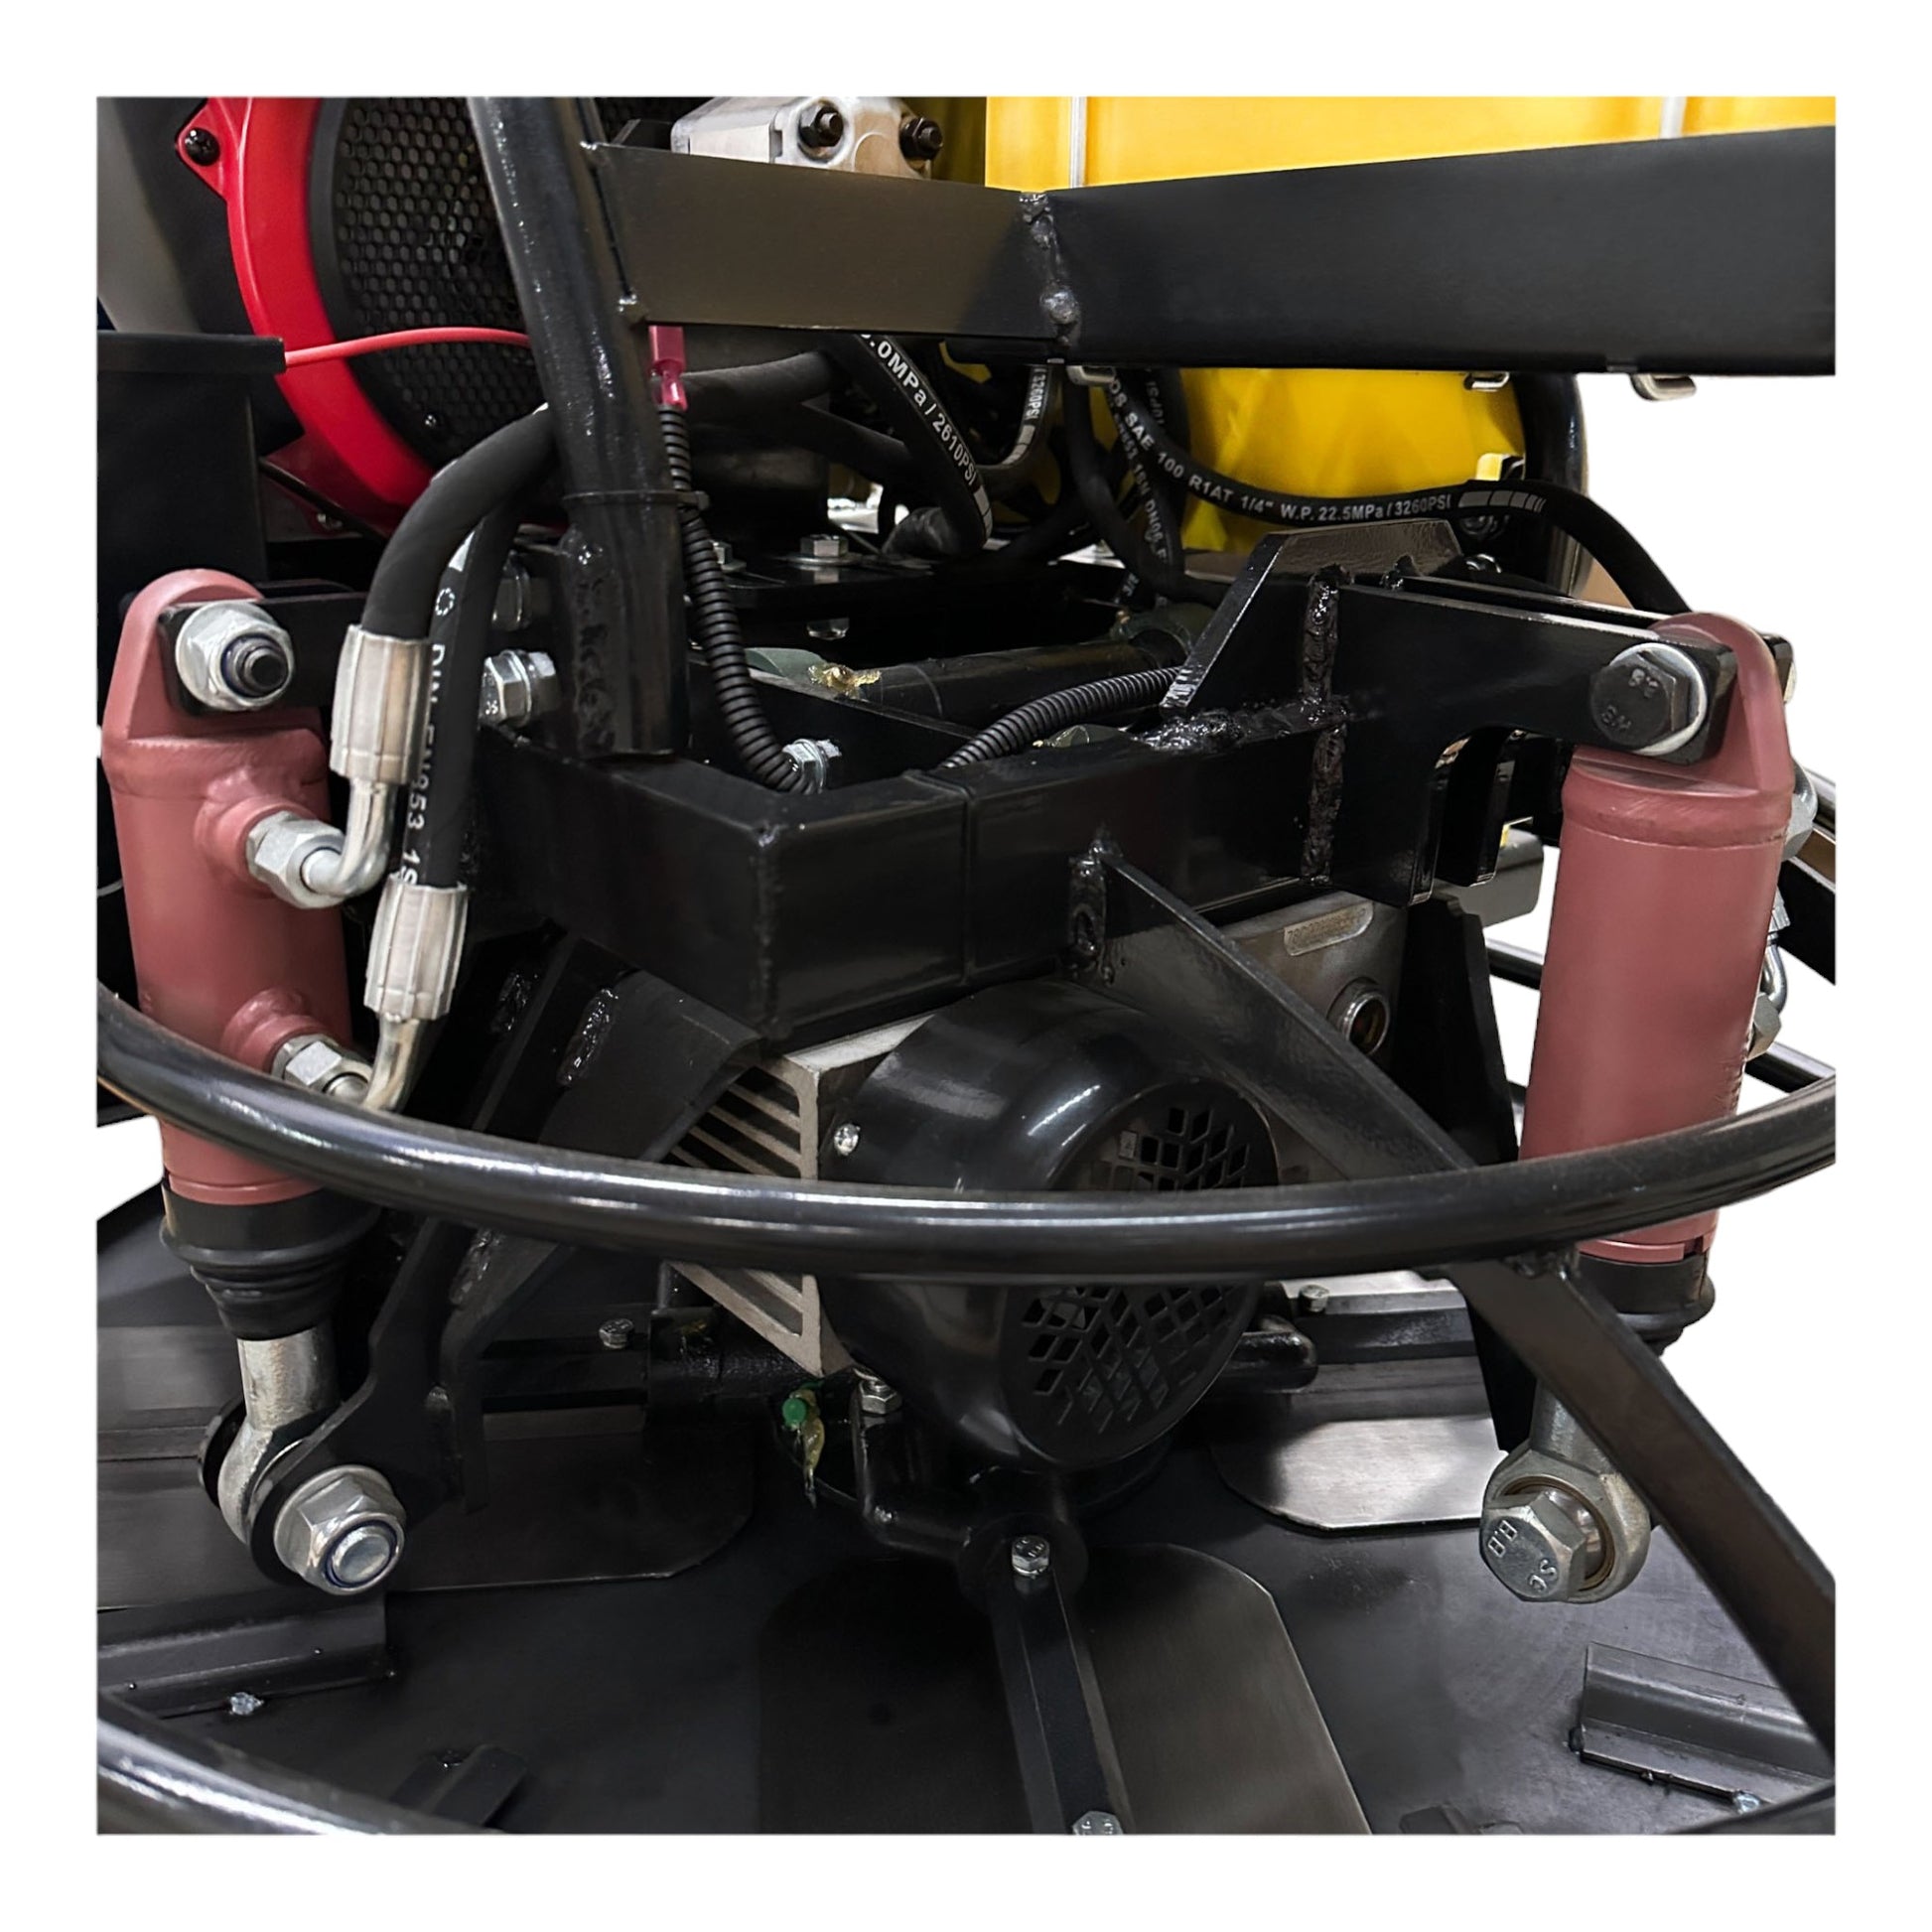 QUMH78 Honda GX690 Tour hydraulique de 36 pouces sur truelle mécanique